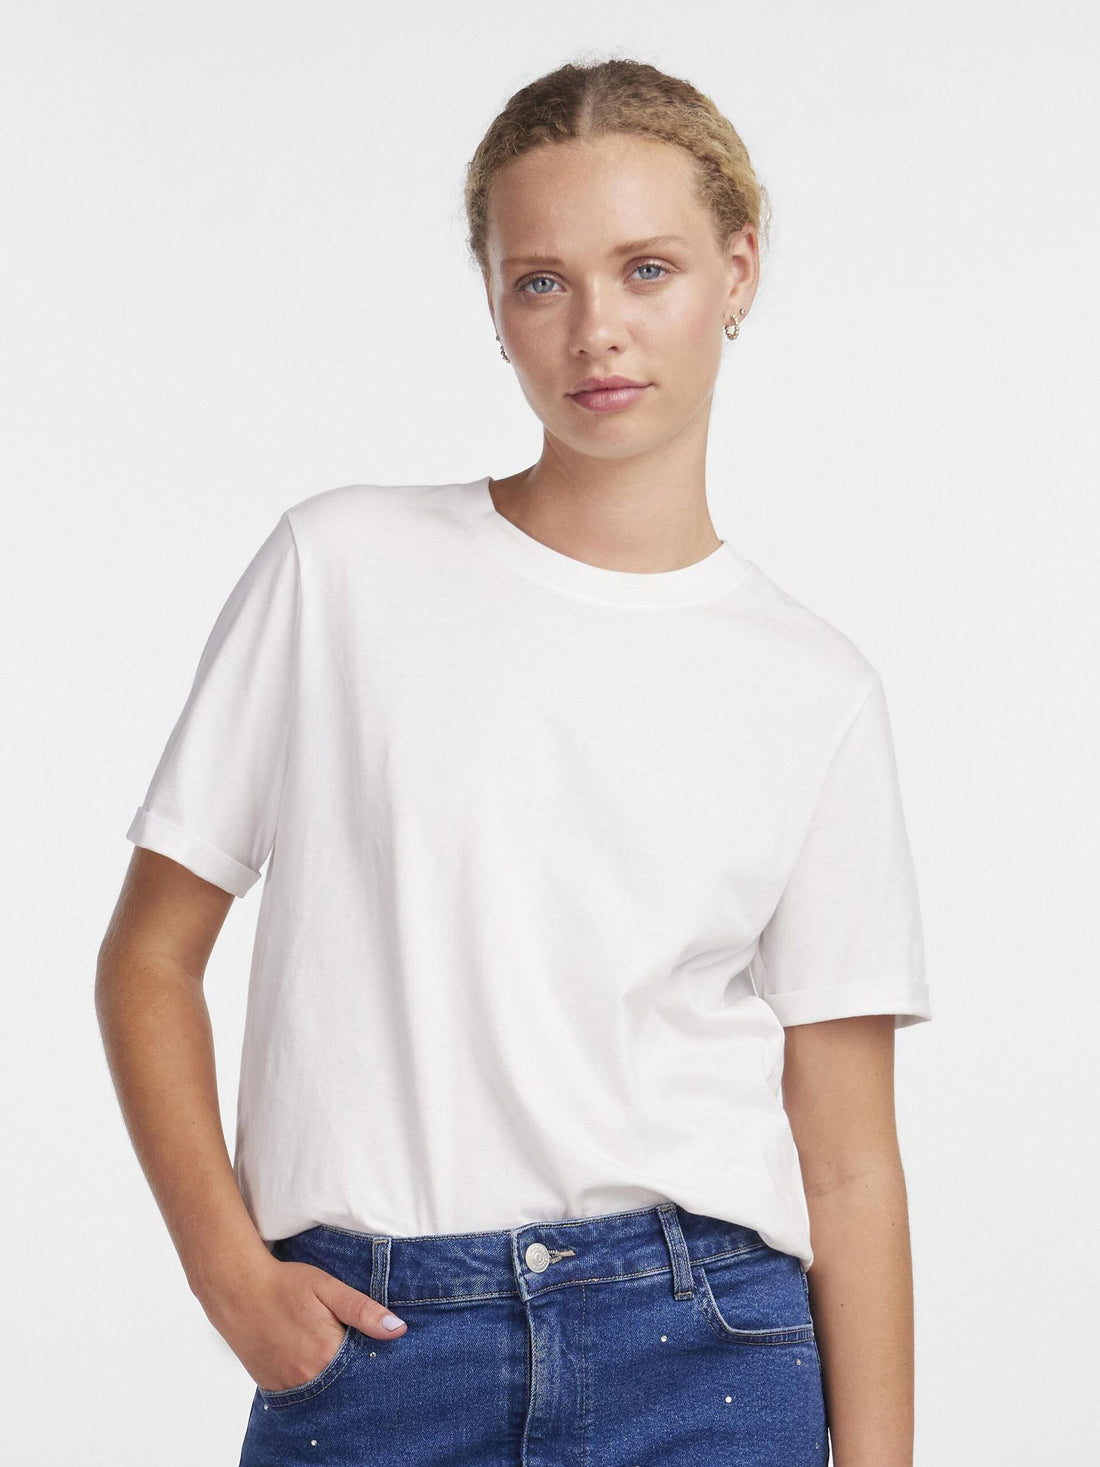 T-Shirt - Ria (Bright white)